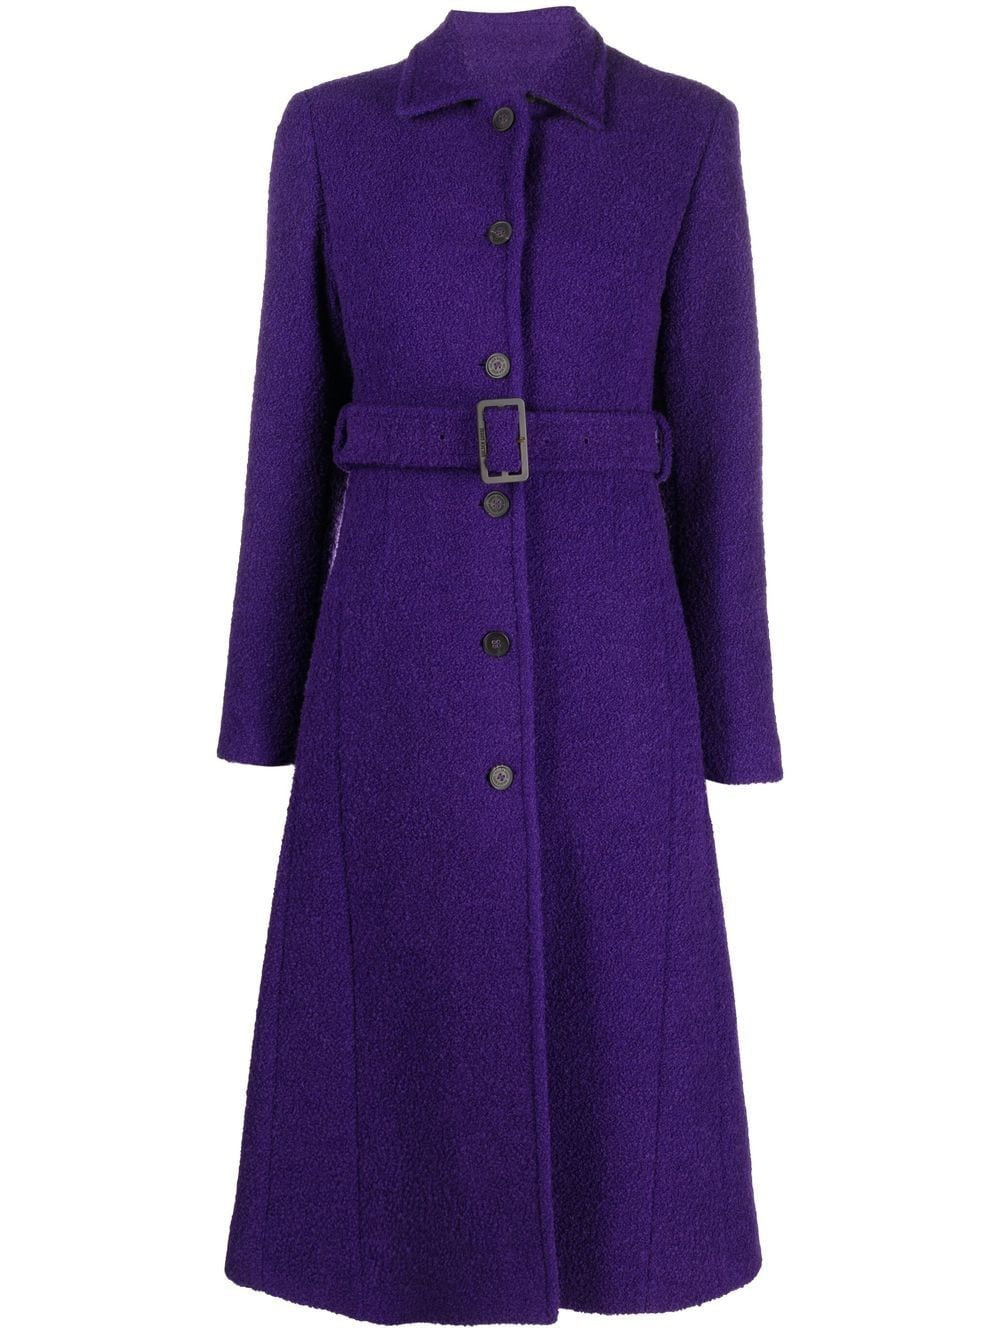 Áo khoác thời trang Violet Indigo dành cho phụ nữ - FW22